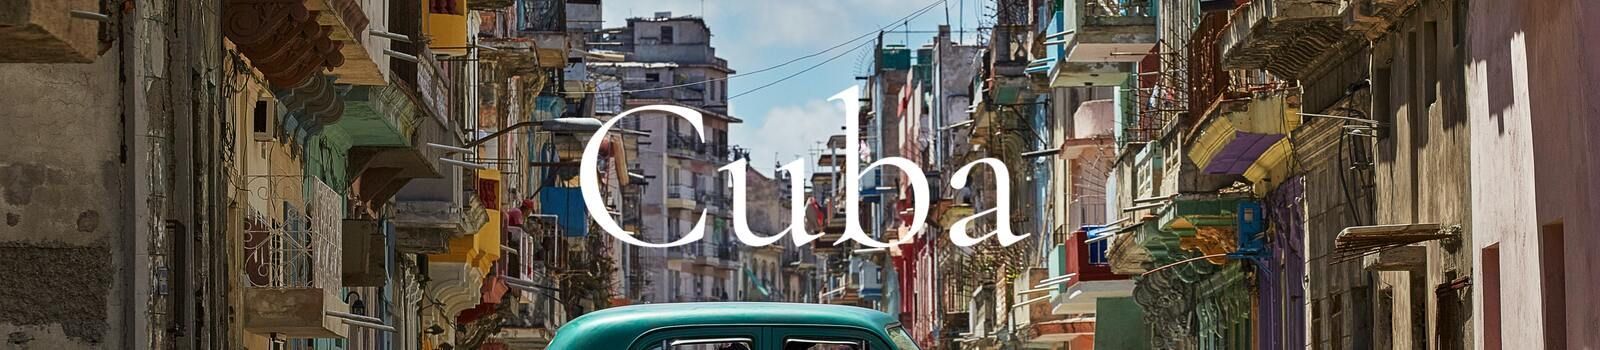 Cuba banner